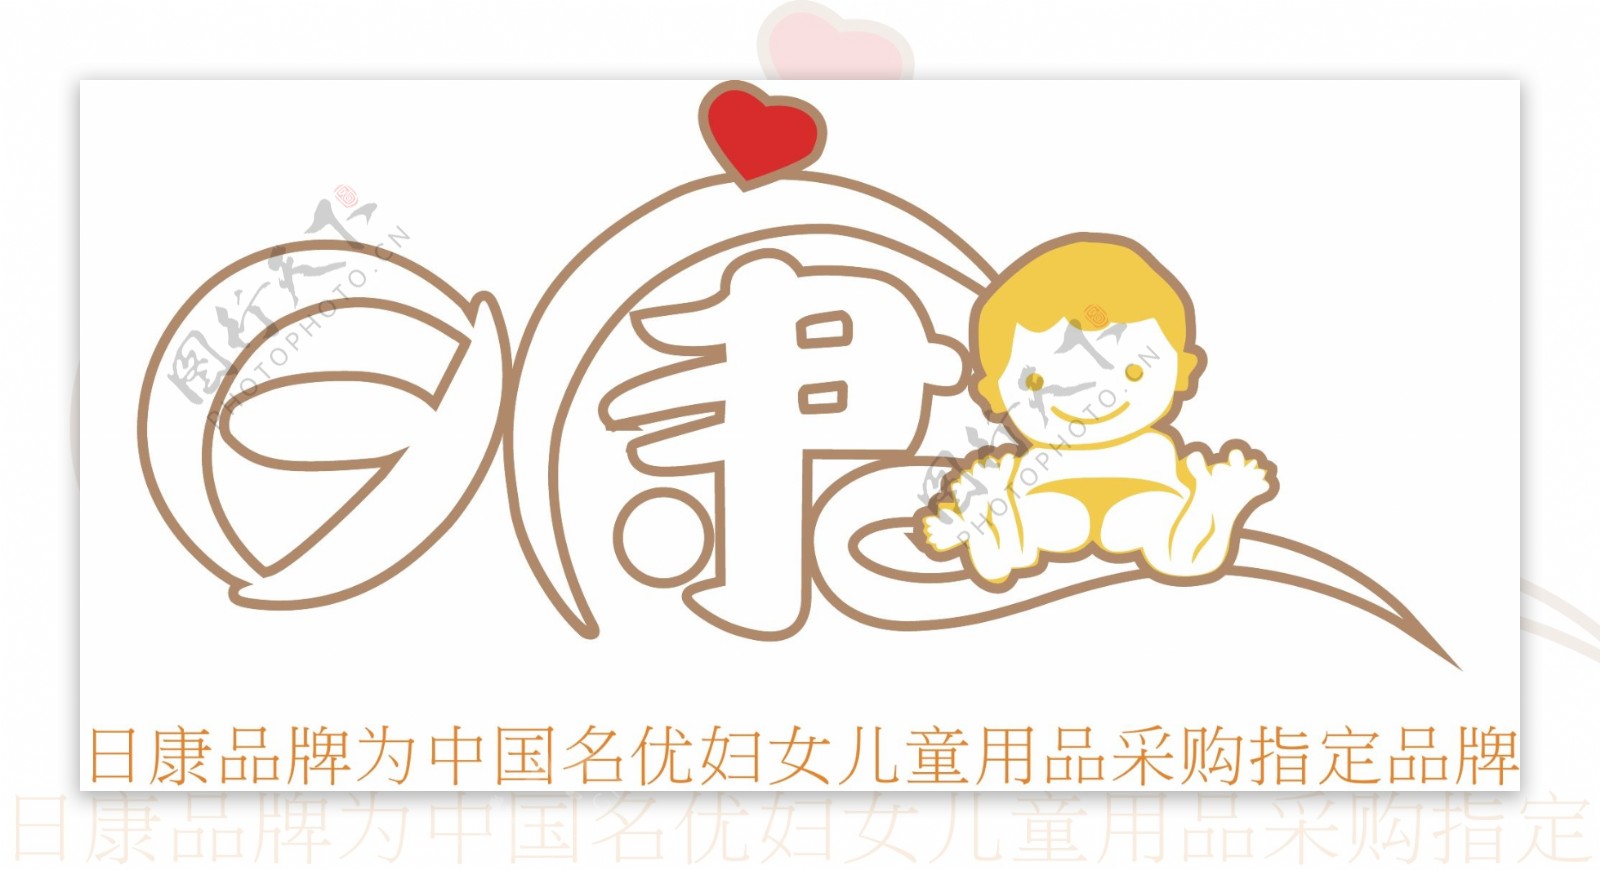 日康矢量logo图片